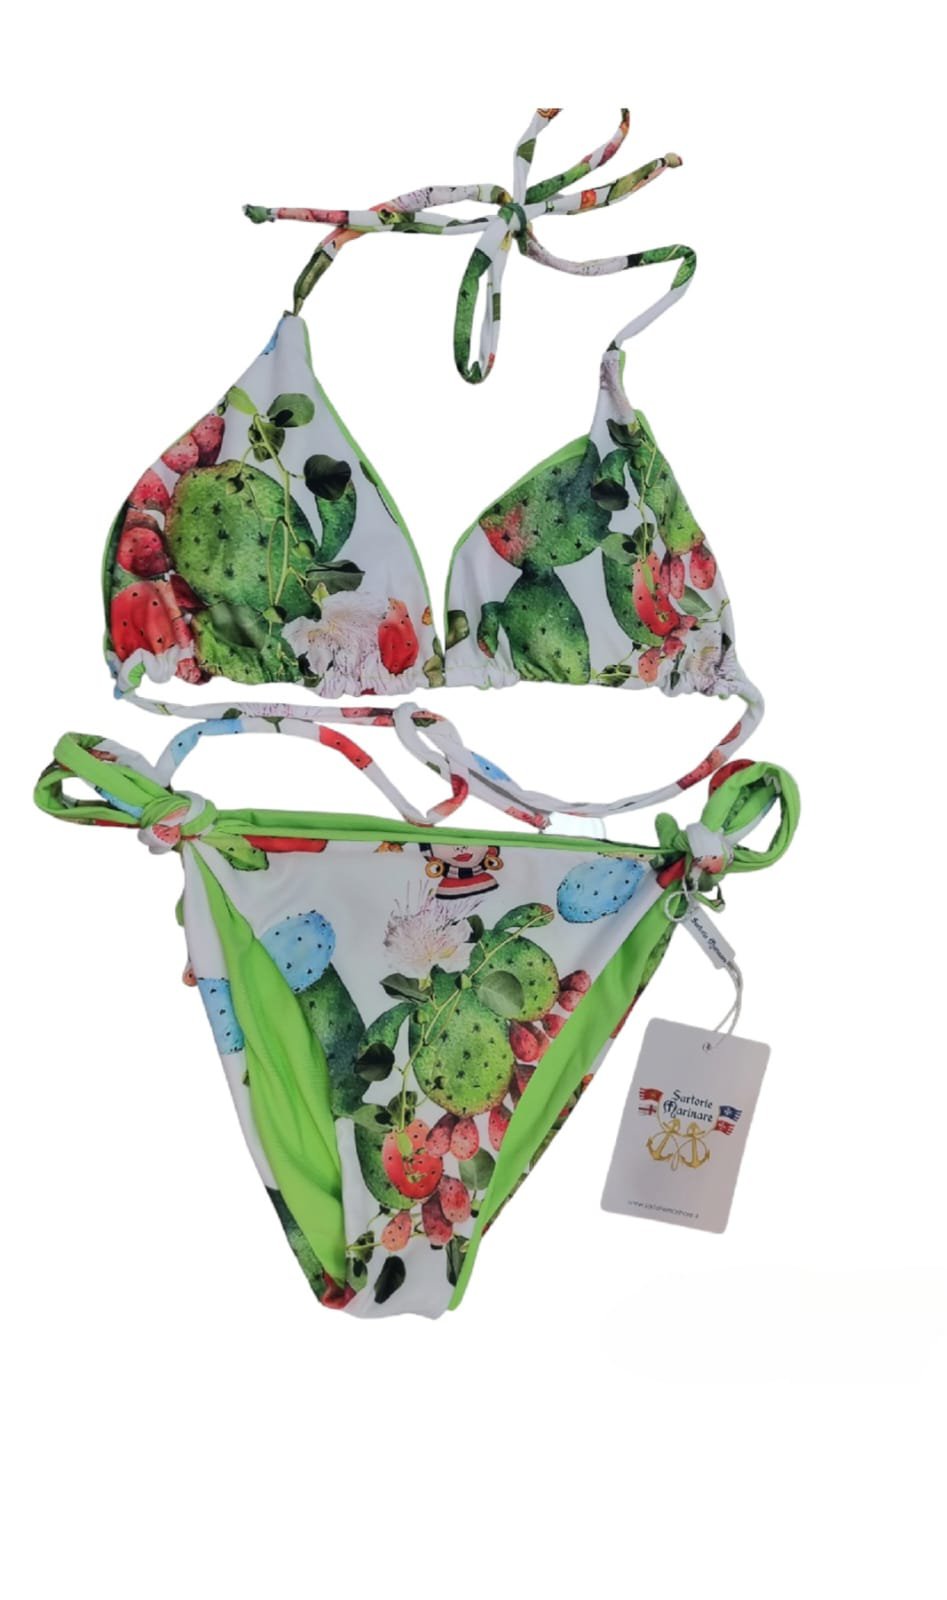 Maillot de bain bikini triangle réversible vert avec bas réglable par lacets. Motif cactus et marron foncé